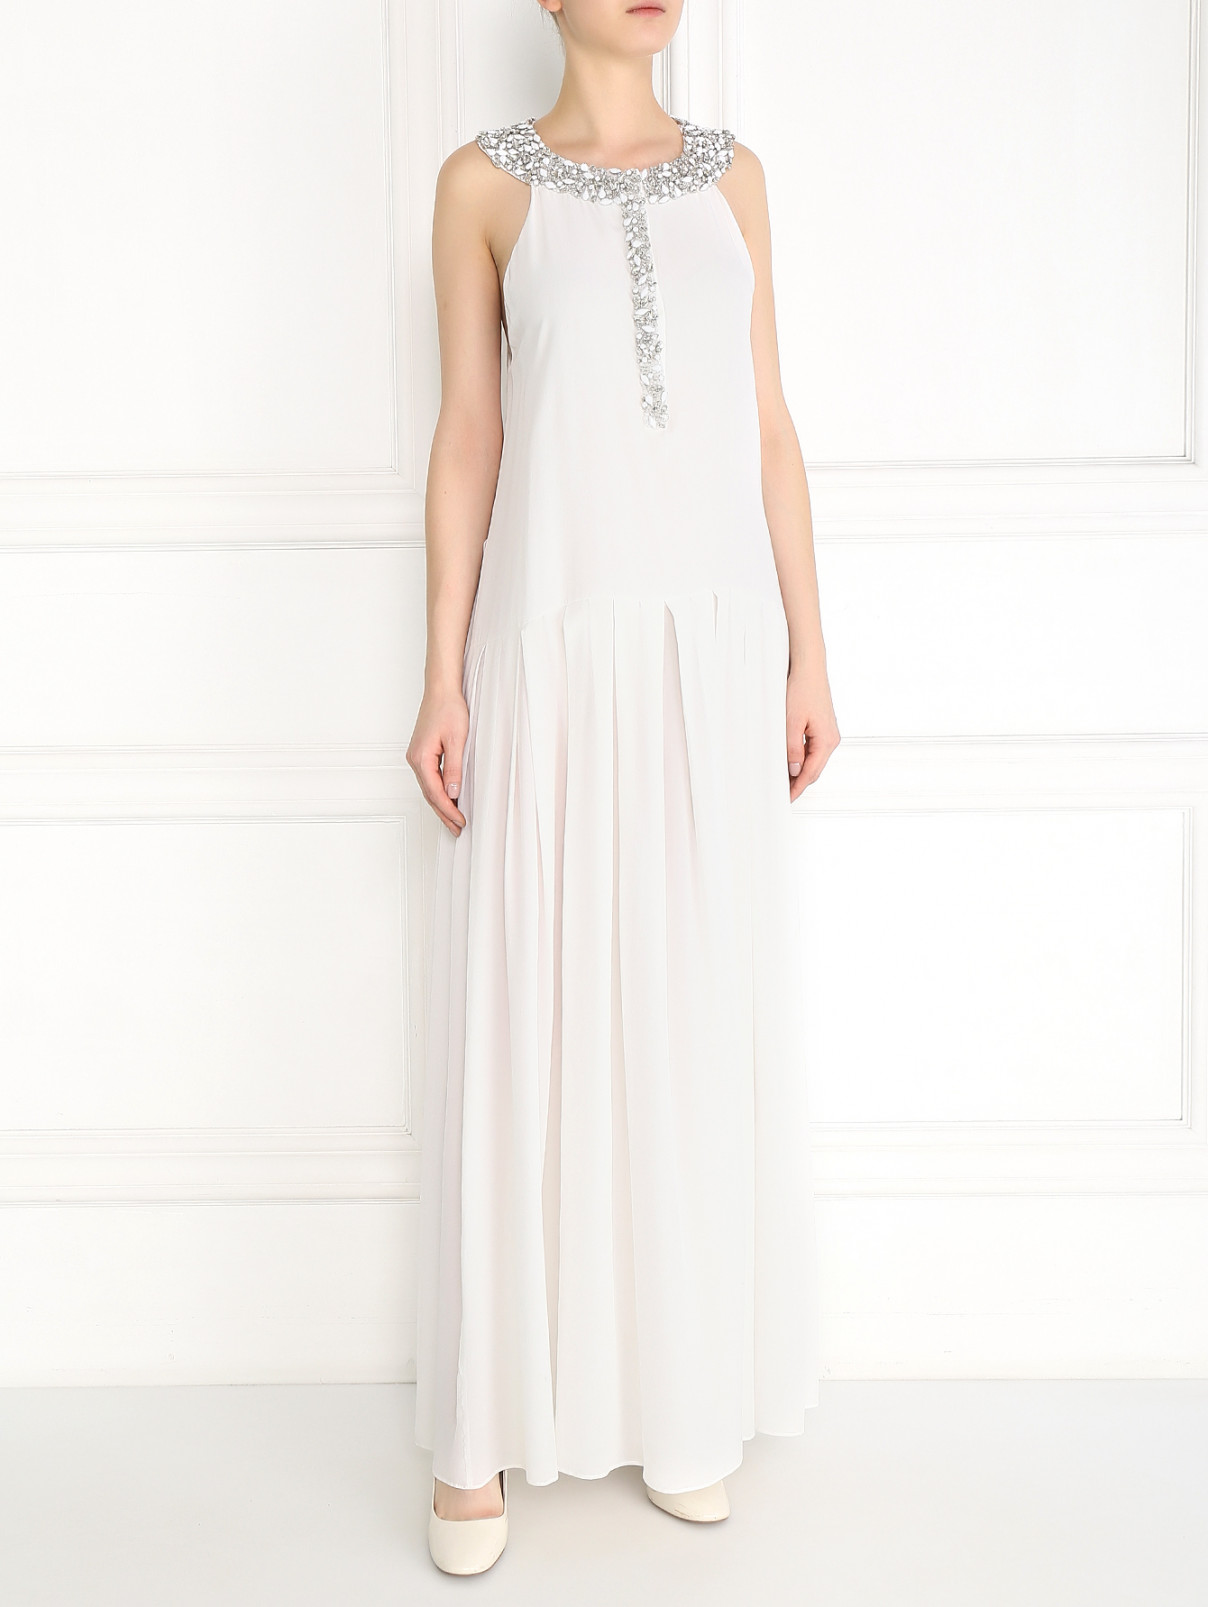 Платье-макси из шелка декорированное кристаллами Ermanno Scervino  –  Модель Общий вид  – Цвет:  Белый